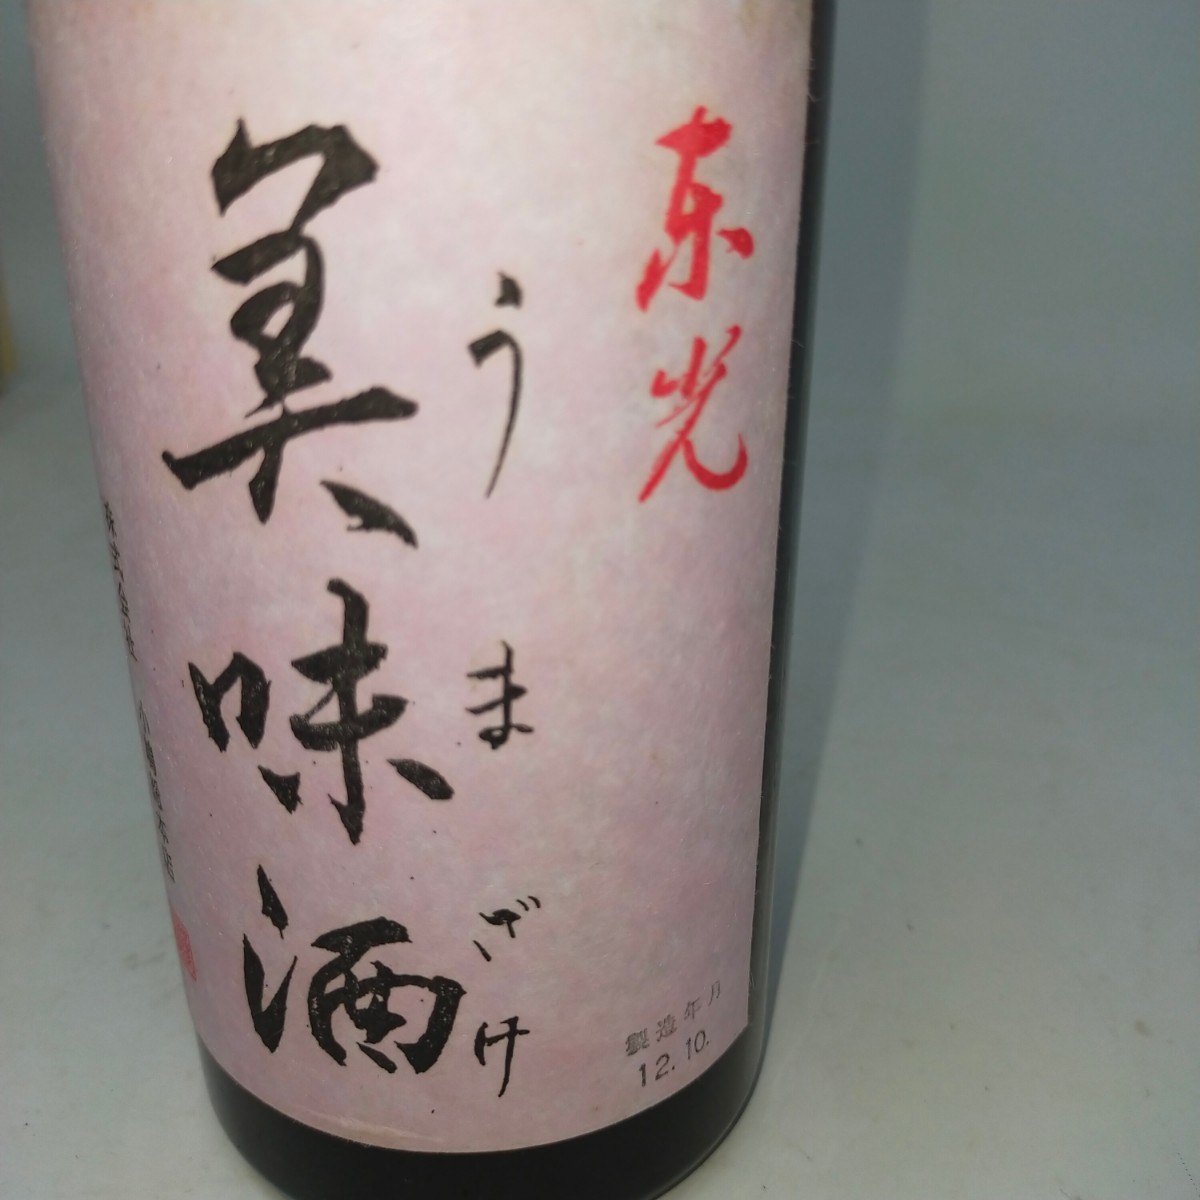 * unopened * Kiyoshi sake higashi light beautiful taste sake special book@. structure small . total head office 720ml 12 year 10 month old sake S